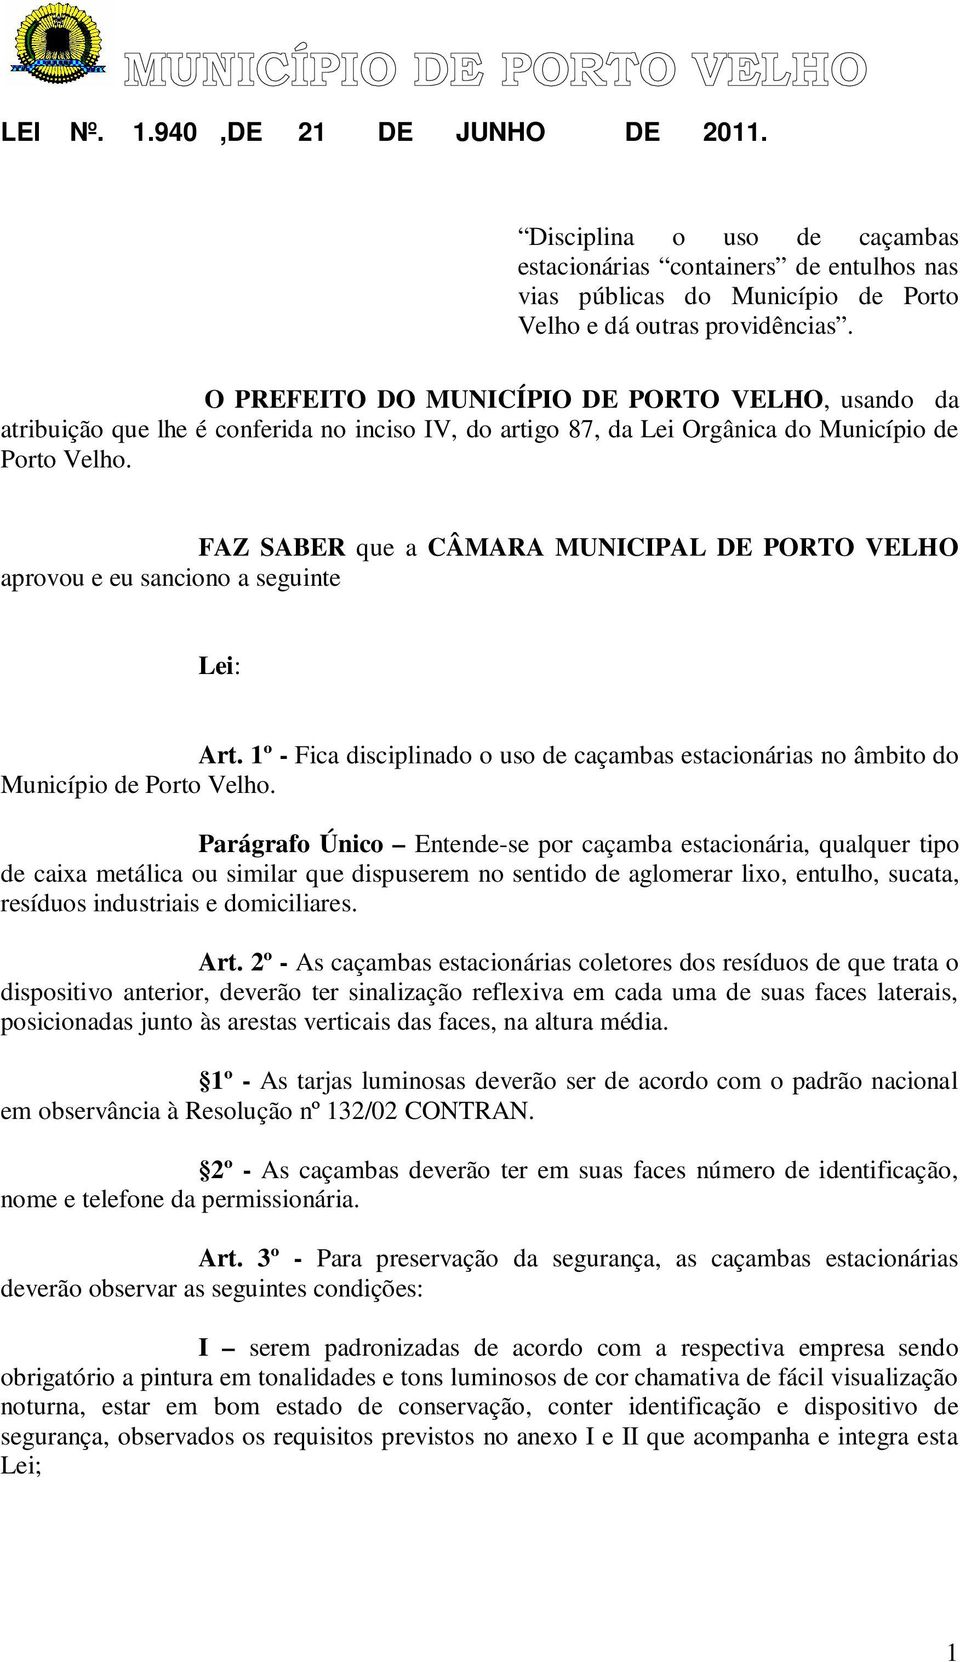 FAZ SABER que a CÂMARA MUNICIPAL DE PORTO VELHO aprovou e eu sanciono a seguinte Lei: Art. 1º - Fica disciplinado o uso de caçambas estacionárias no âmbito do Município de Porto Velho.